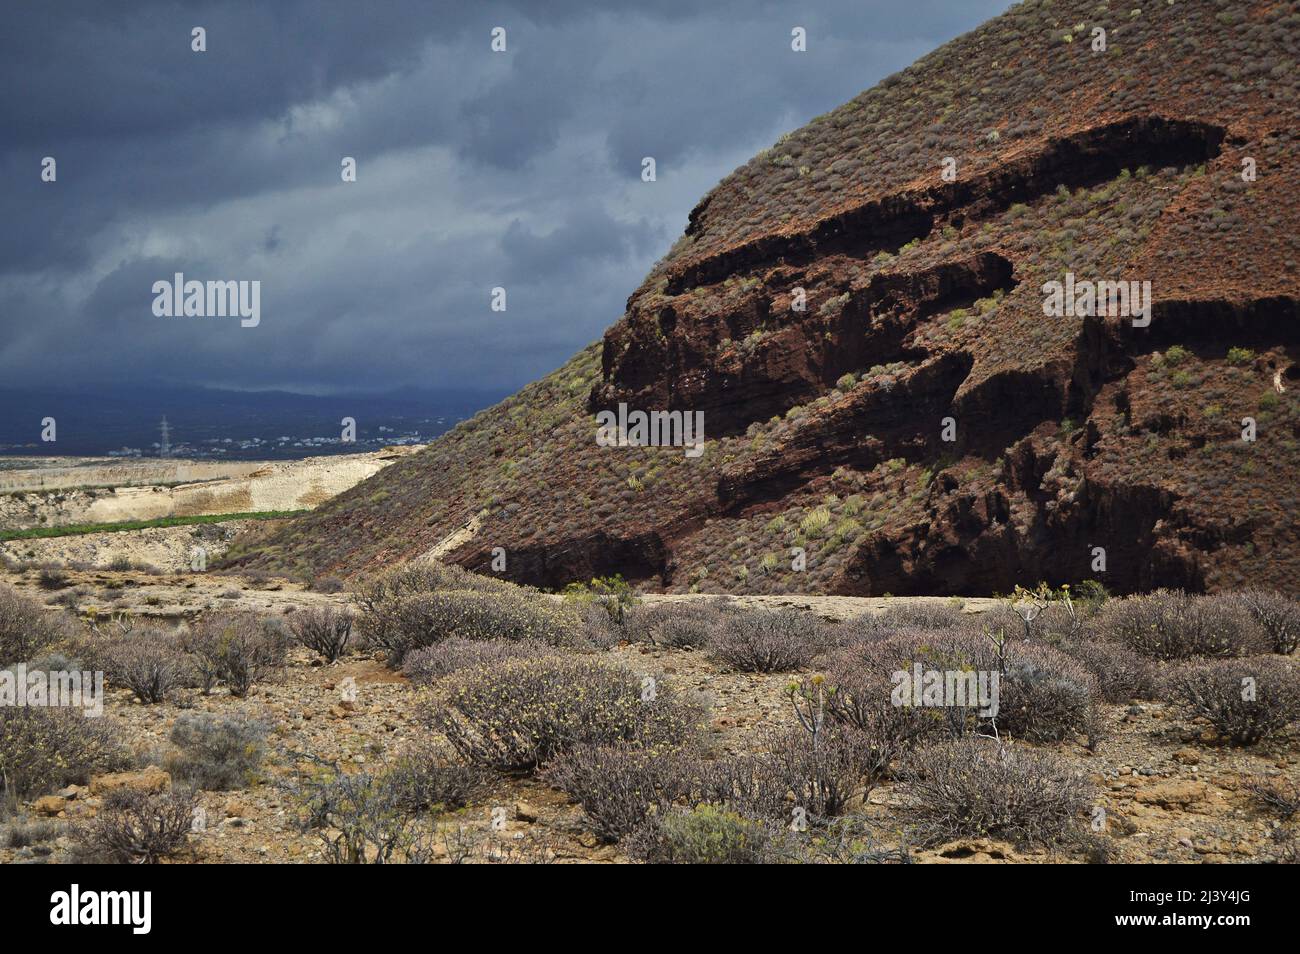 Montagne volcanique érodée et arbustes succulents poussant dans le paysage aride de Tenerife Sud, îles Canaries Espagne. Banque D'Images